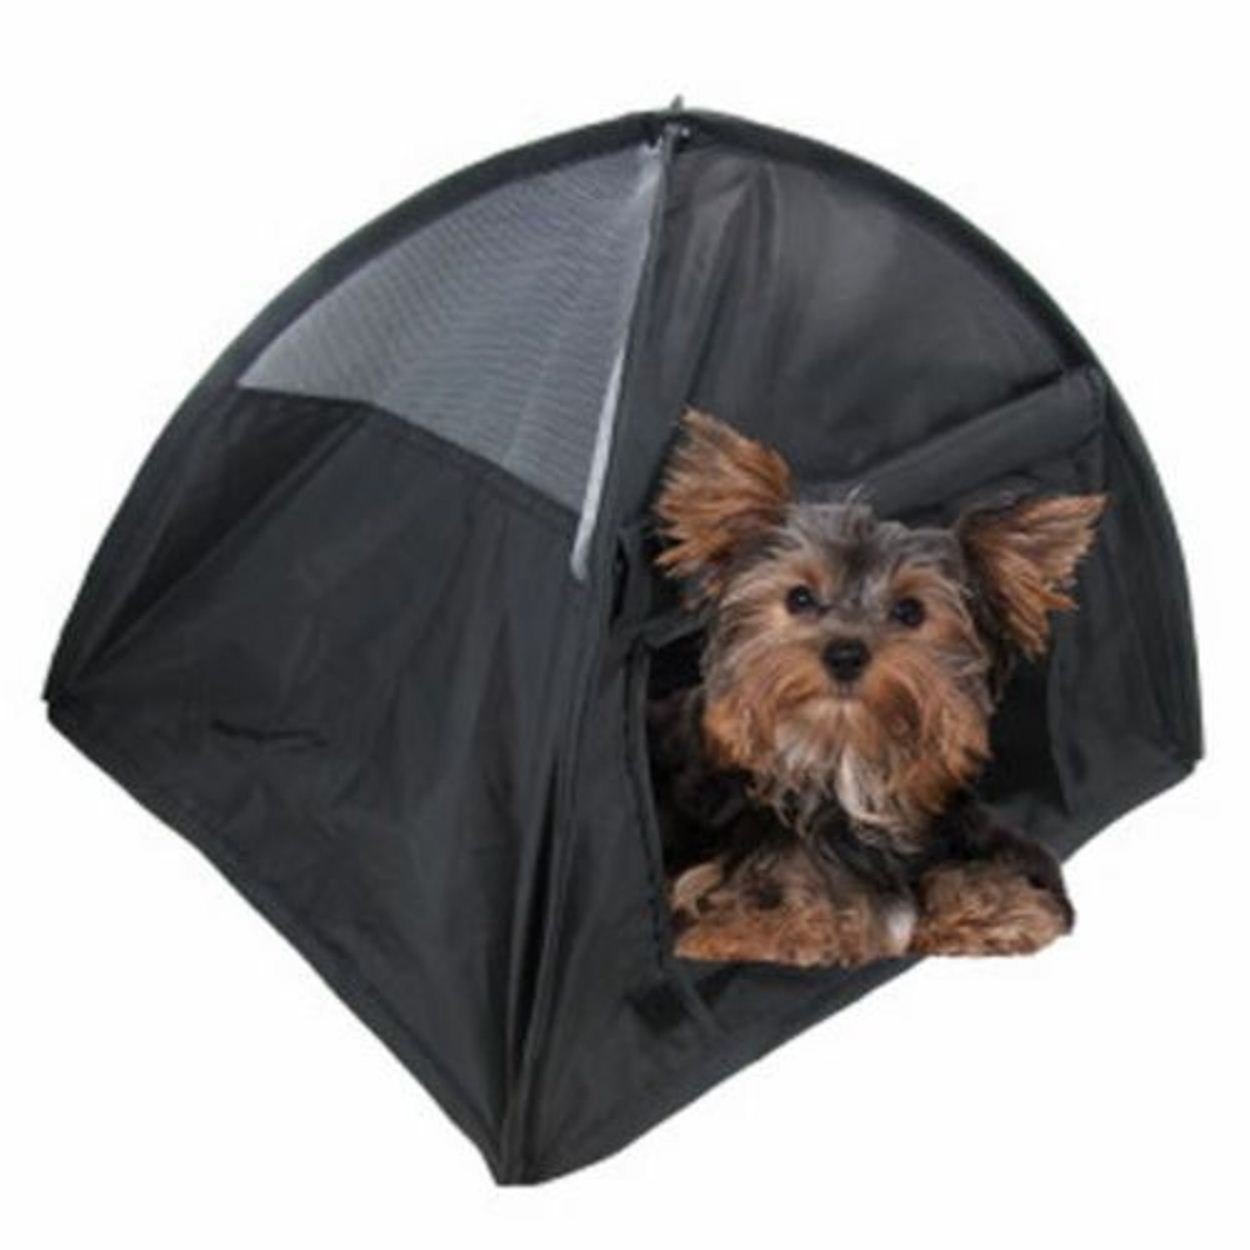 Miniature Puppy Tent – Mini Display Tents